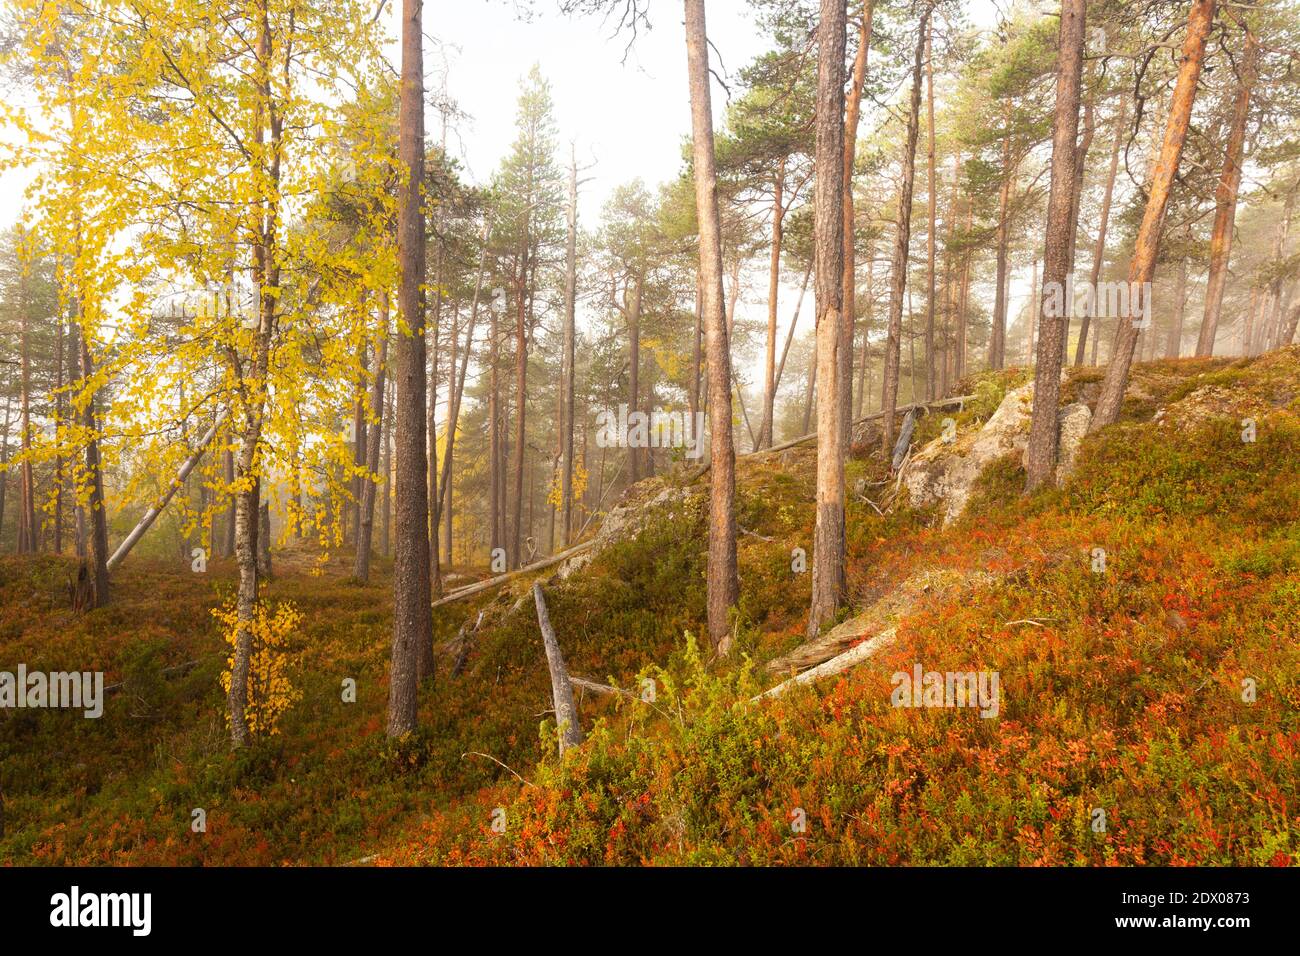 Forêt de taïga vierge et colorée dans le nord de la Finlande, dans le parc national d'Oulanka, au cours d'un lever de soleil brumeux dans le feuillage d'automne. Banque D'Images